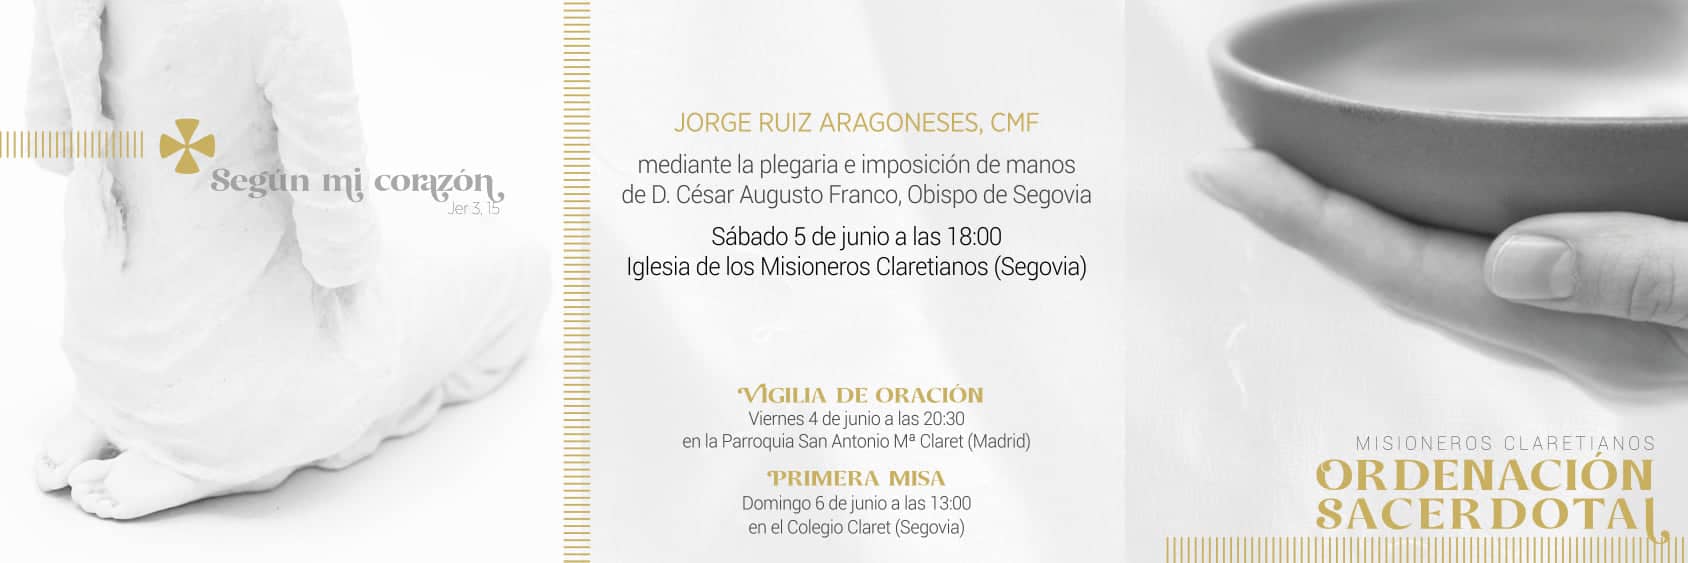 Ordenación de Jorge Ruiz Aragoneses, CMF.